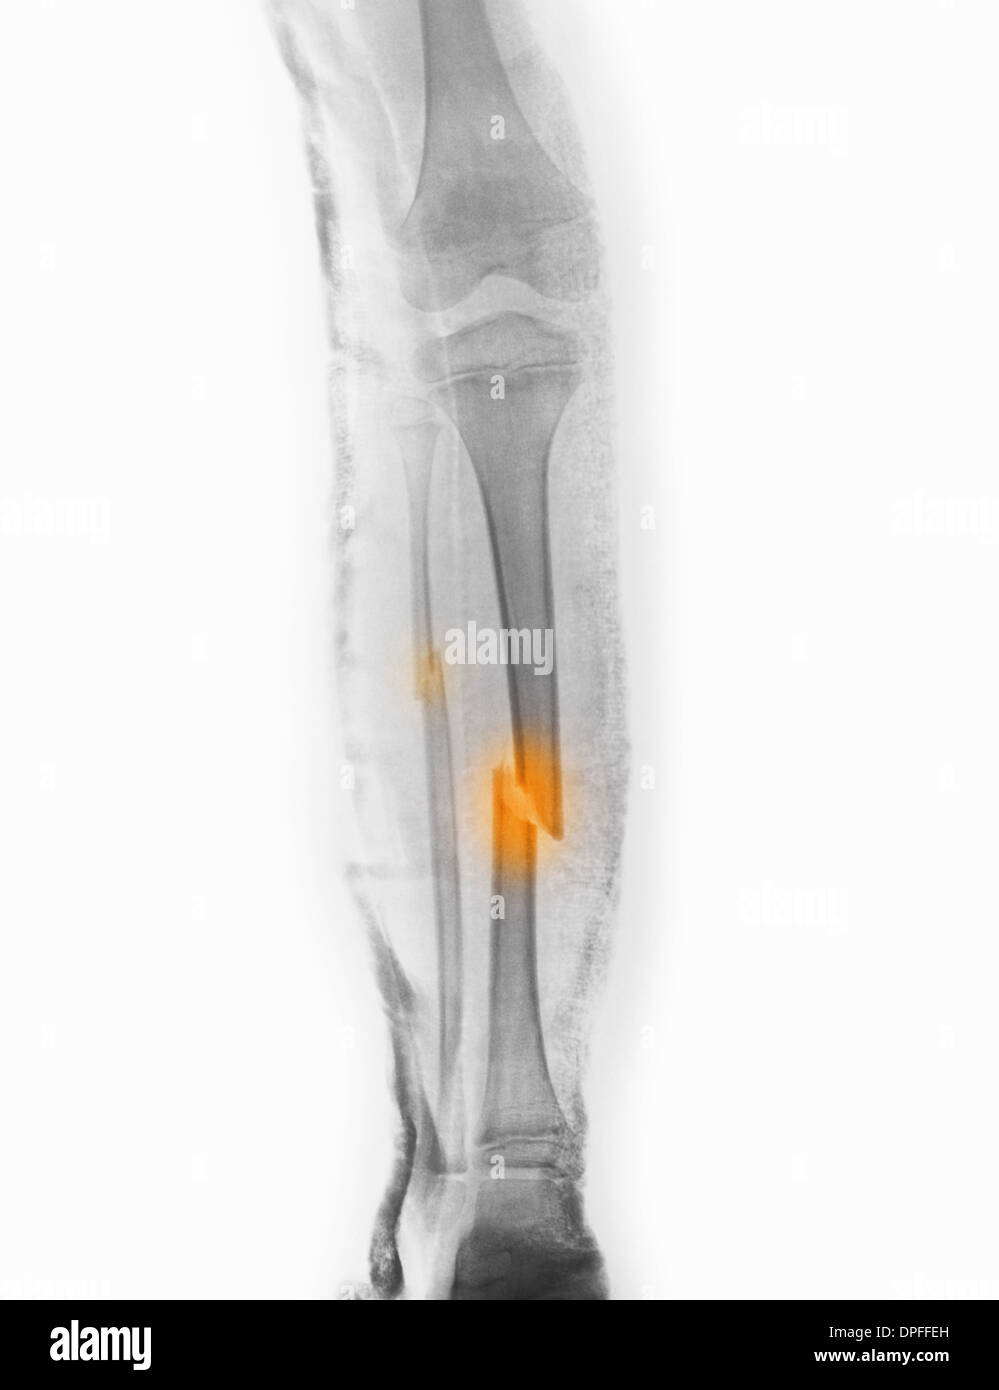 x-ray zeigt schien- und Wadenbein Fraktur Stockfotografie - Alamy